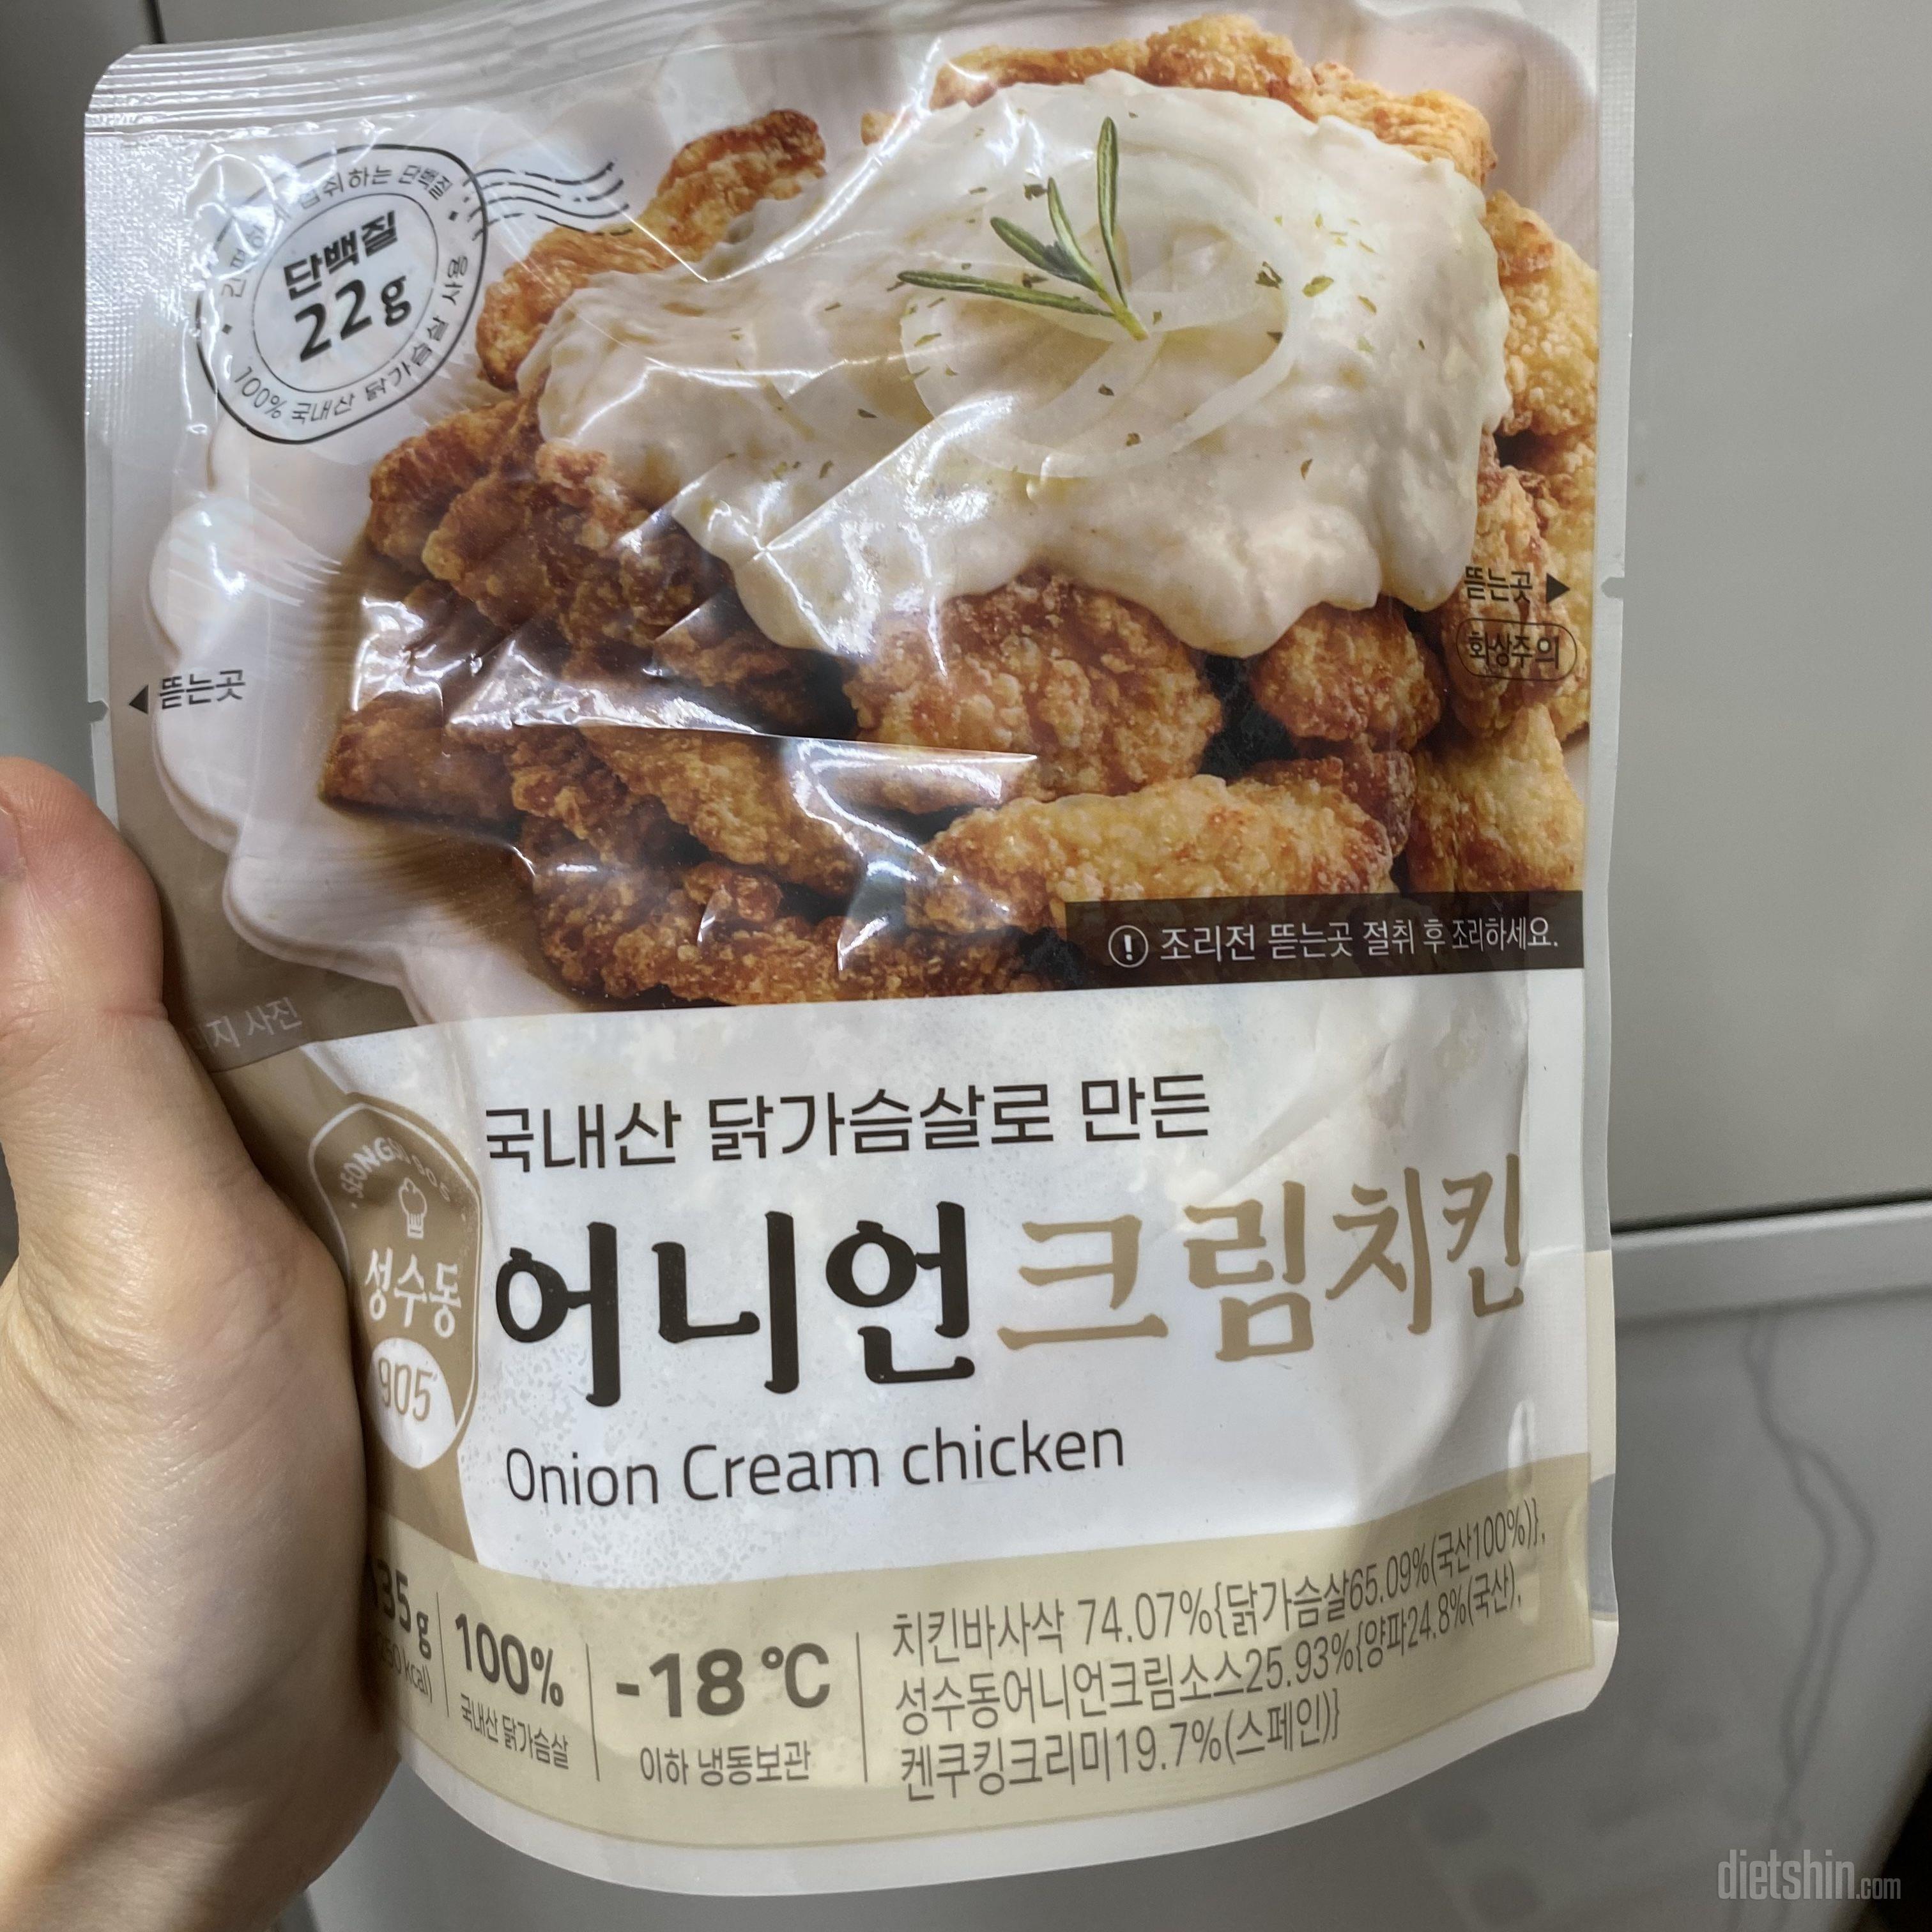 진짜 맛있어요 ㅠㅠ 정말 치킨 먹는